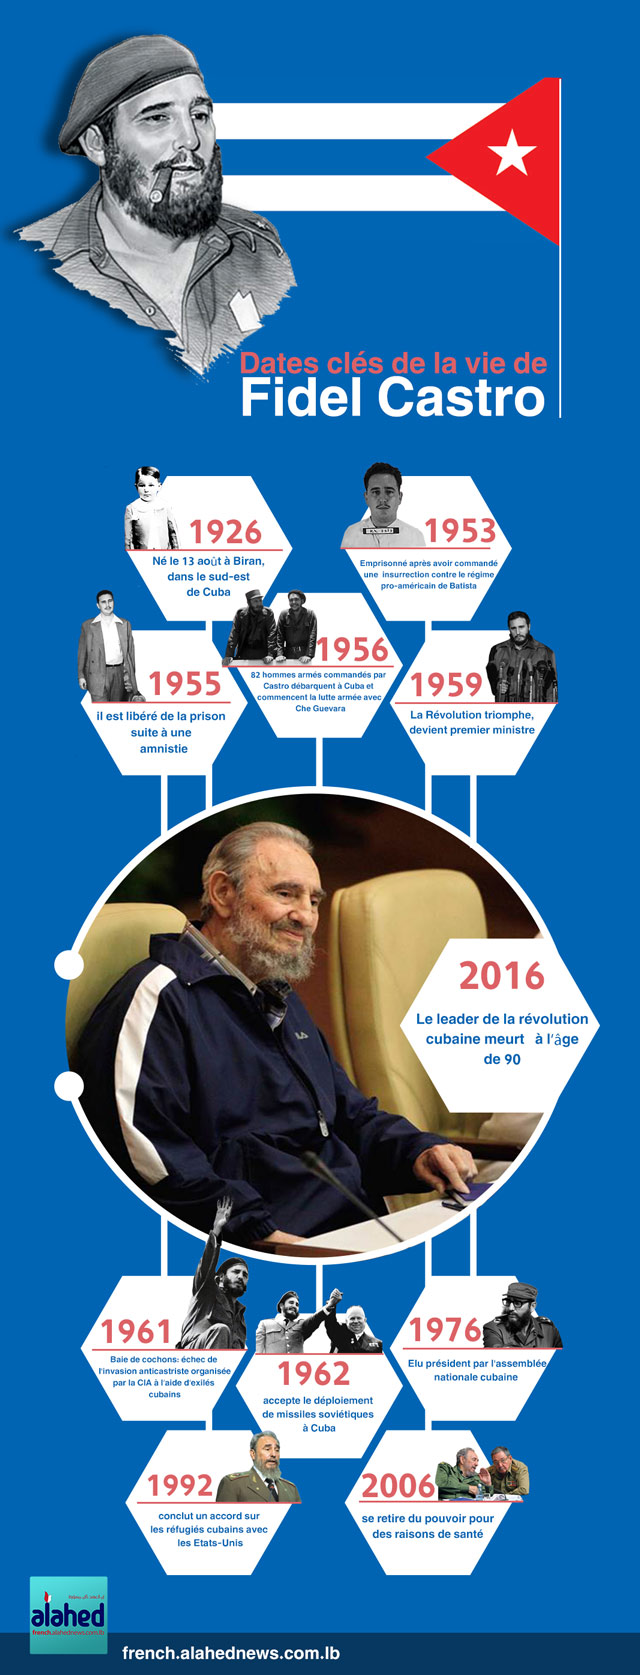 Date clés de la vie de Fidel Castro.